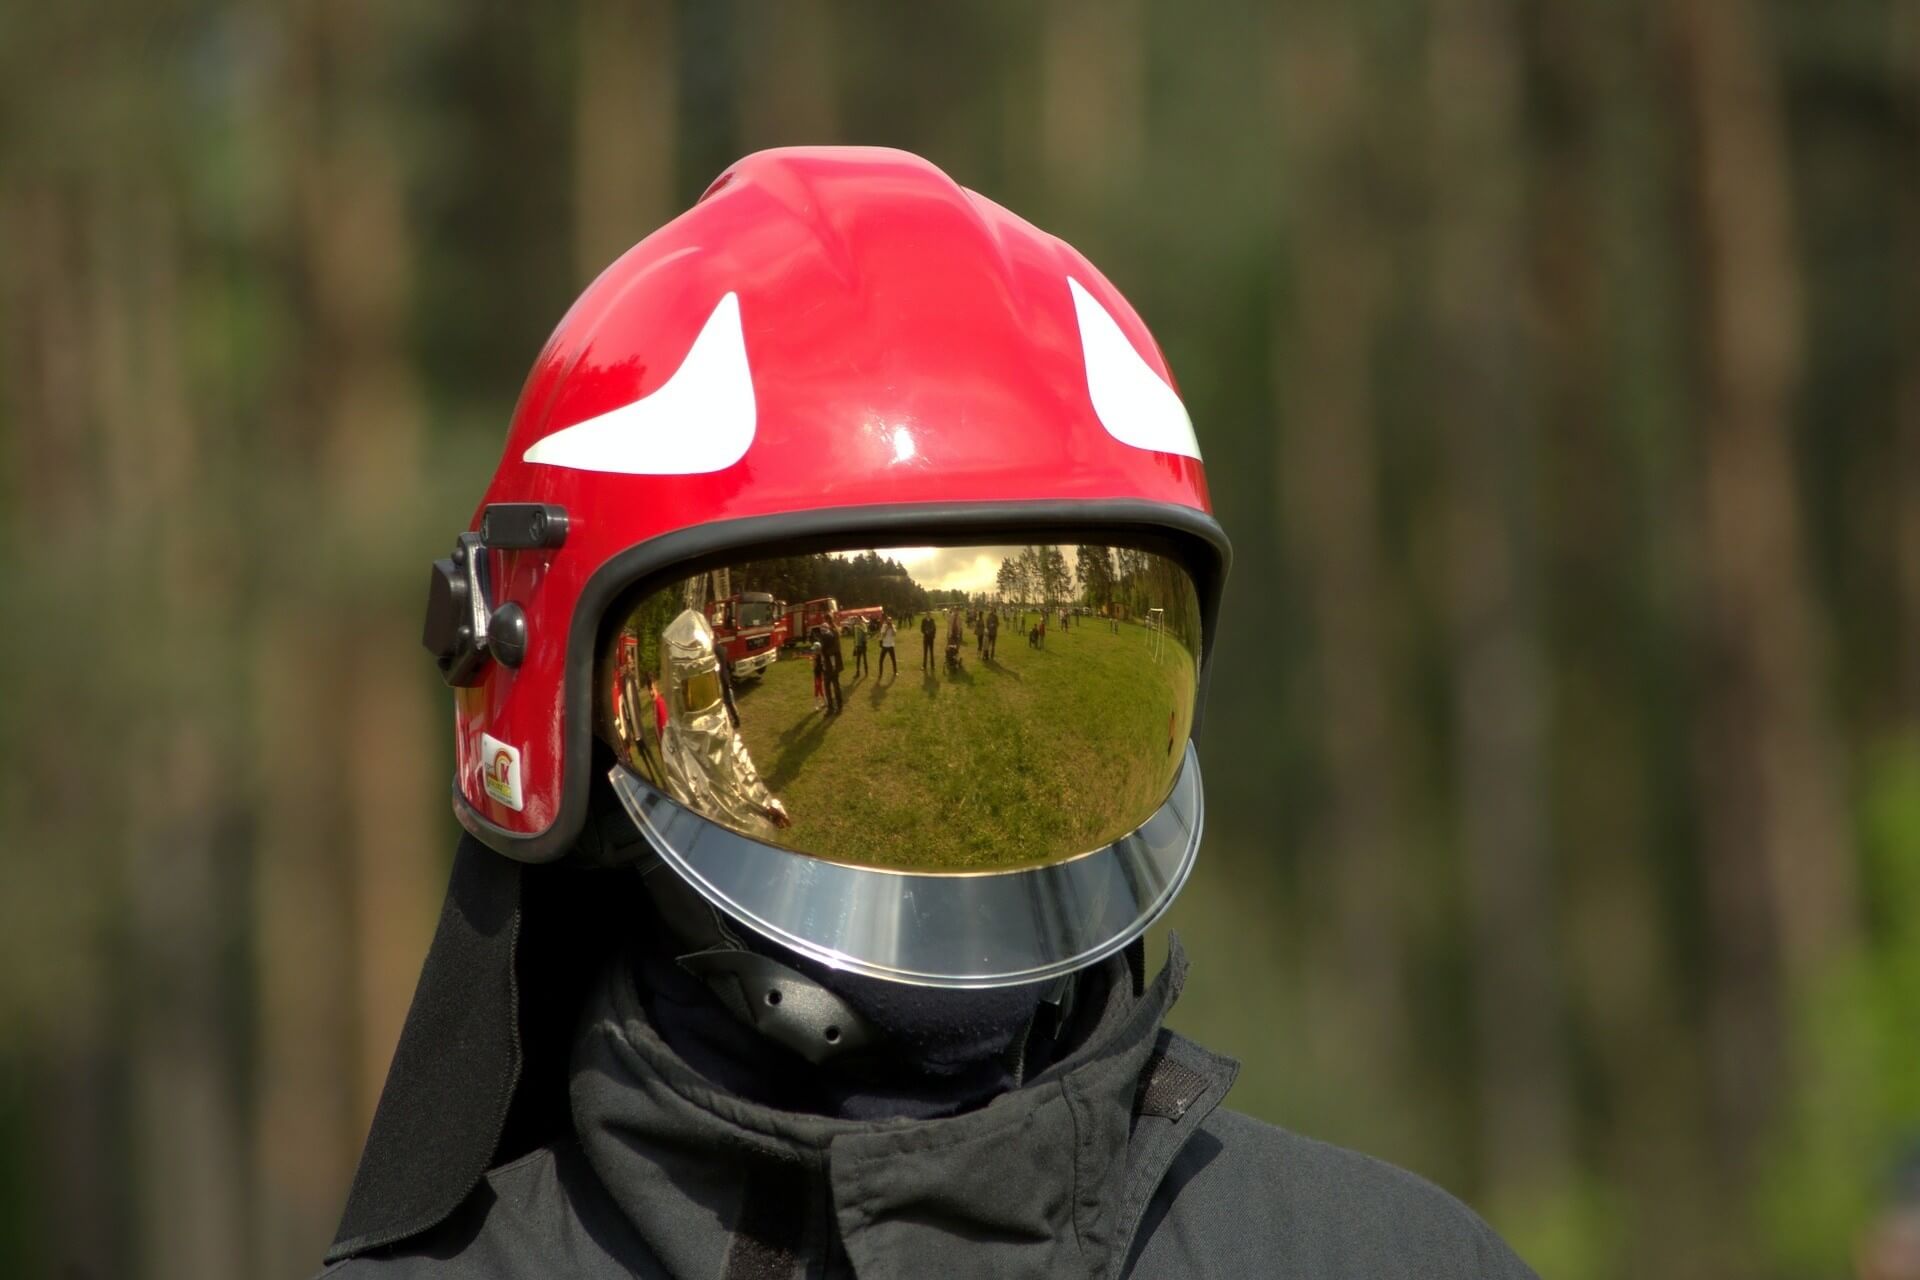 Personalized Fire Helmet